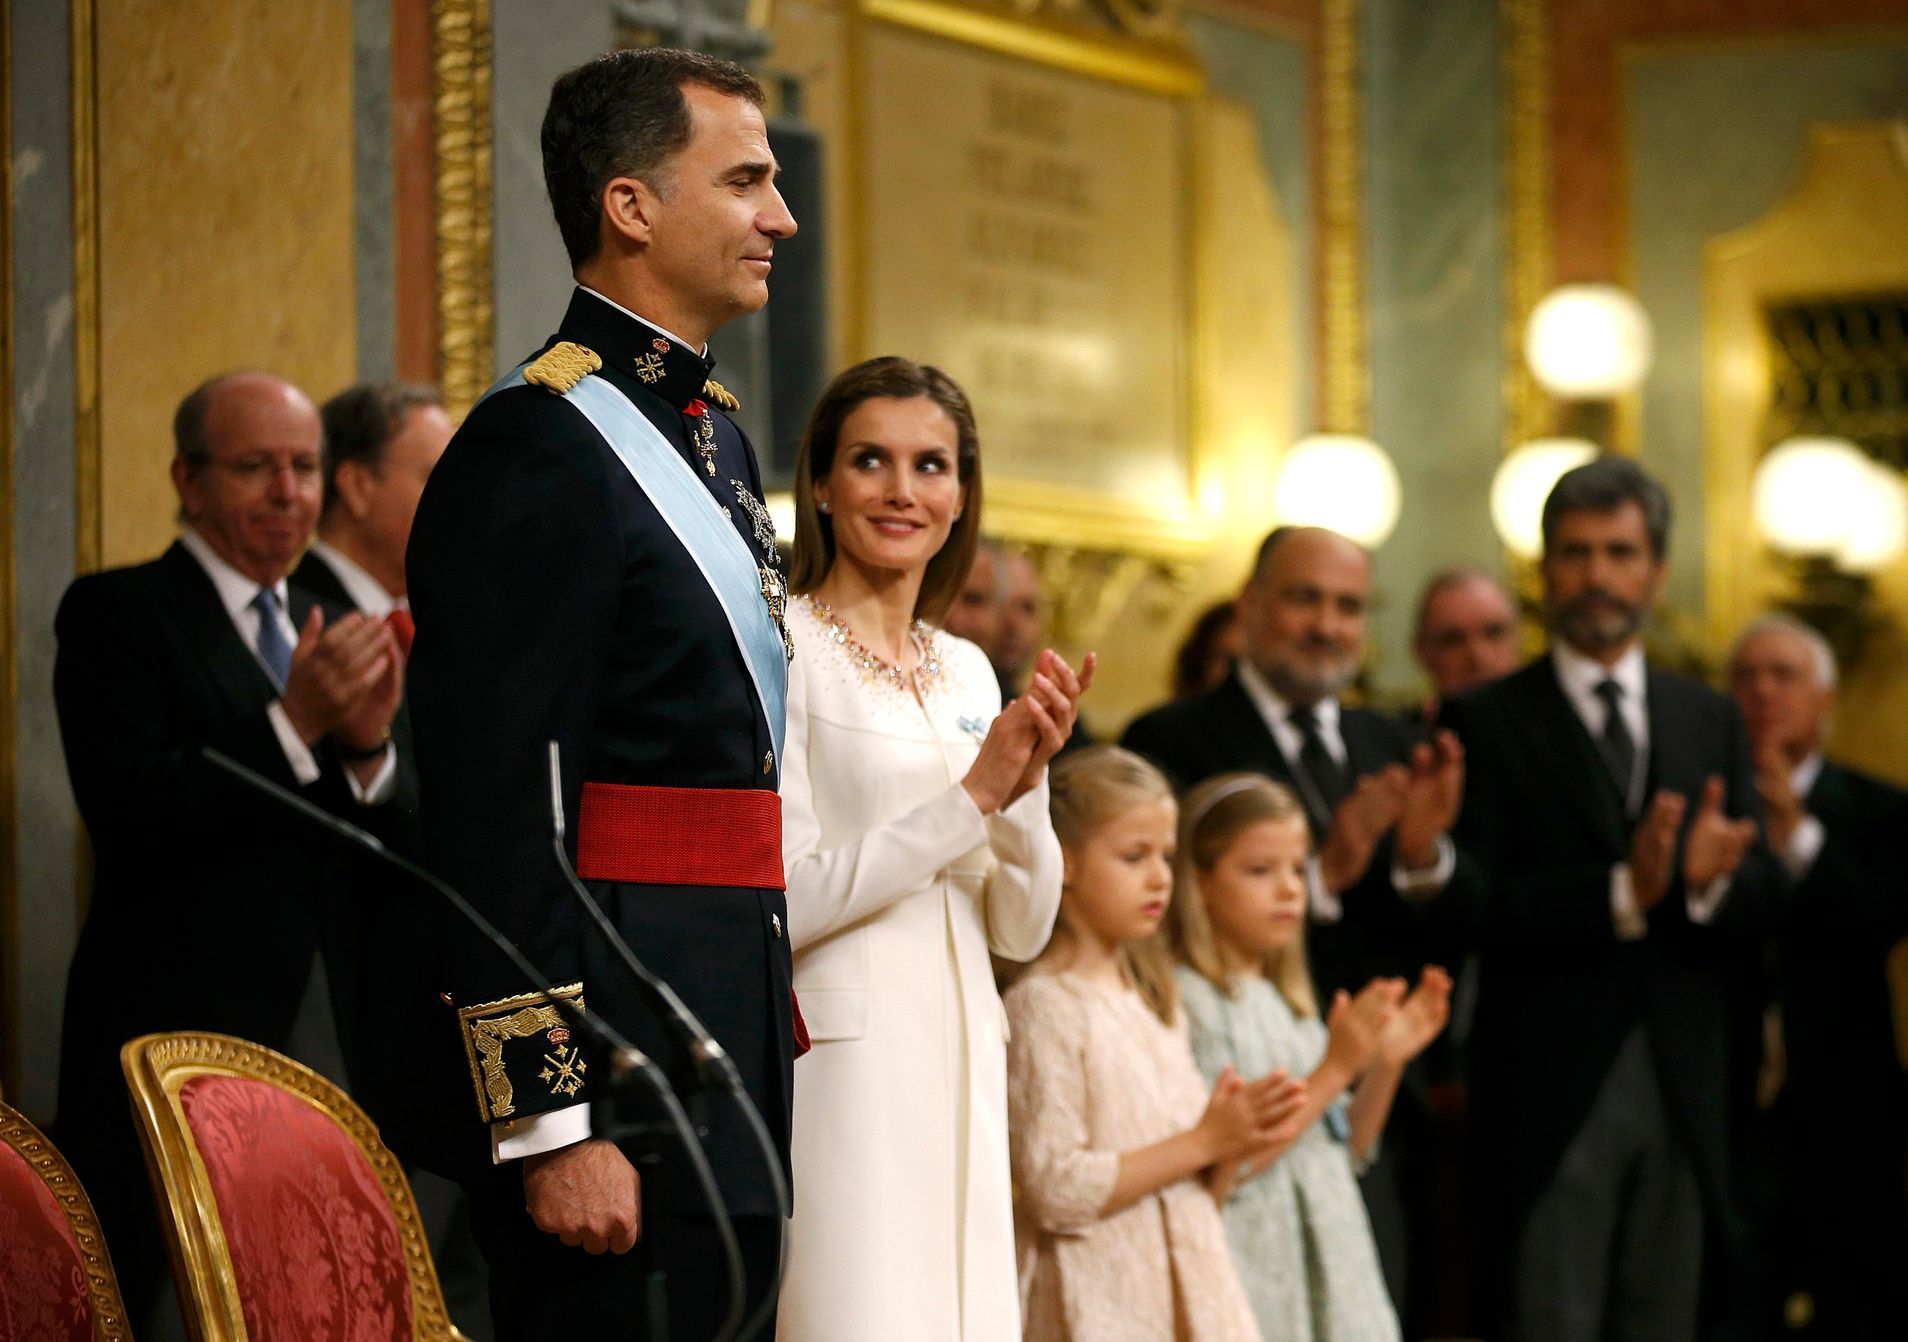 Korunovace španělského krále Felipeho VI.